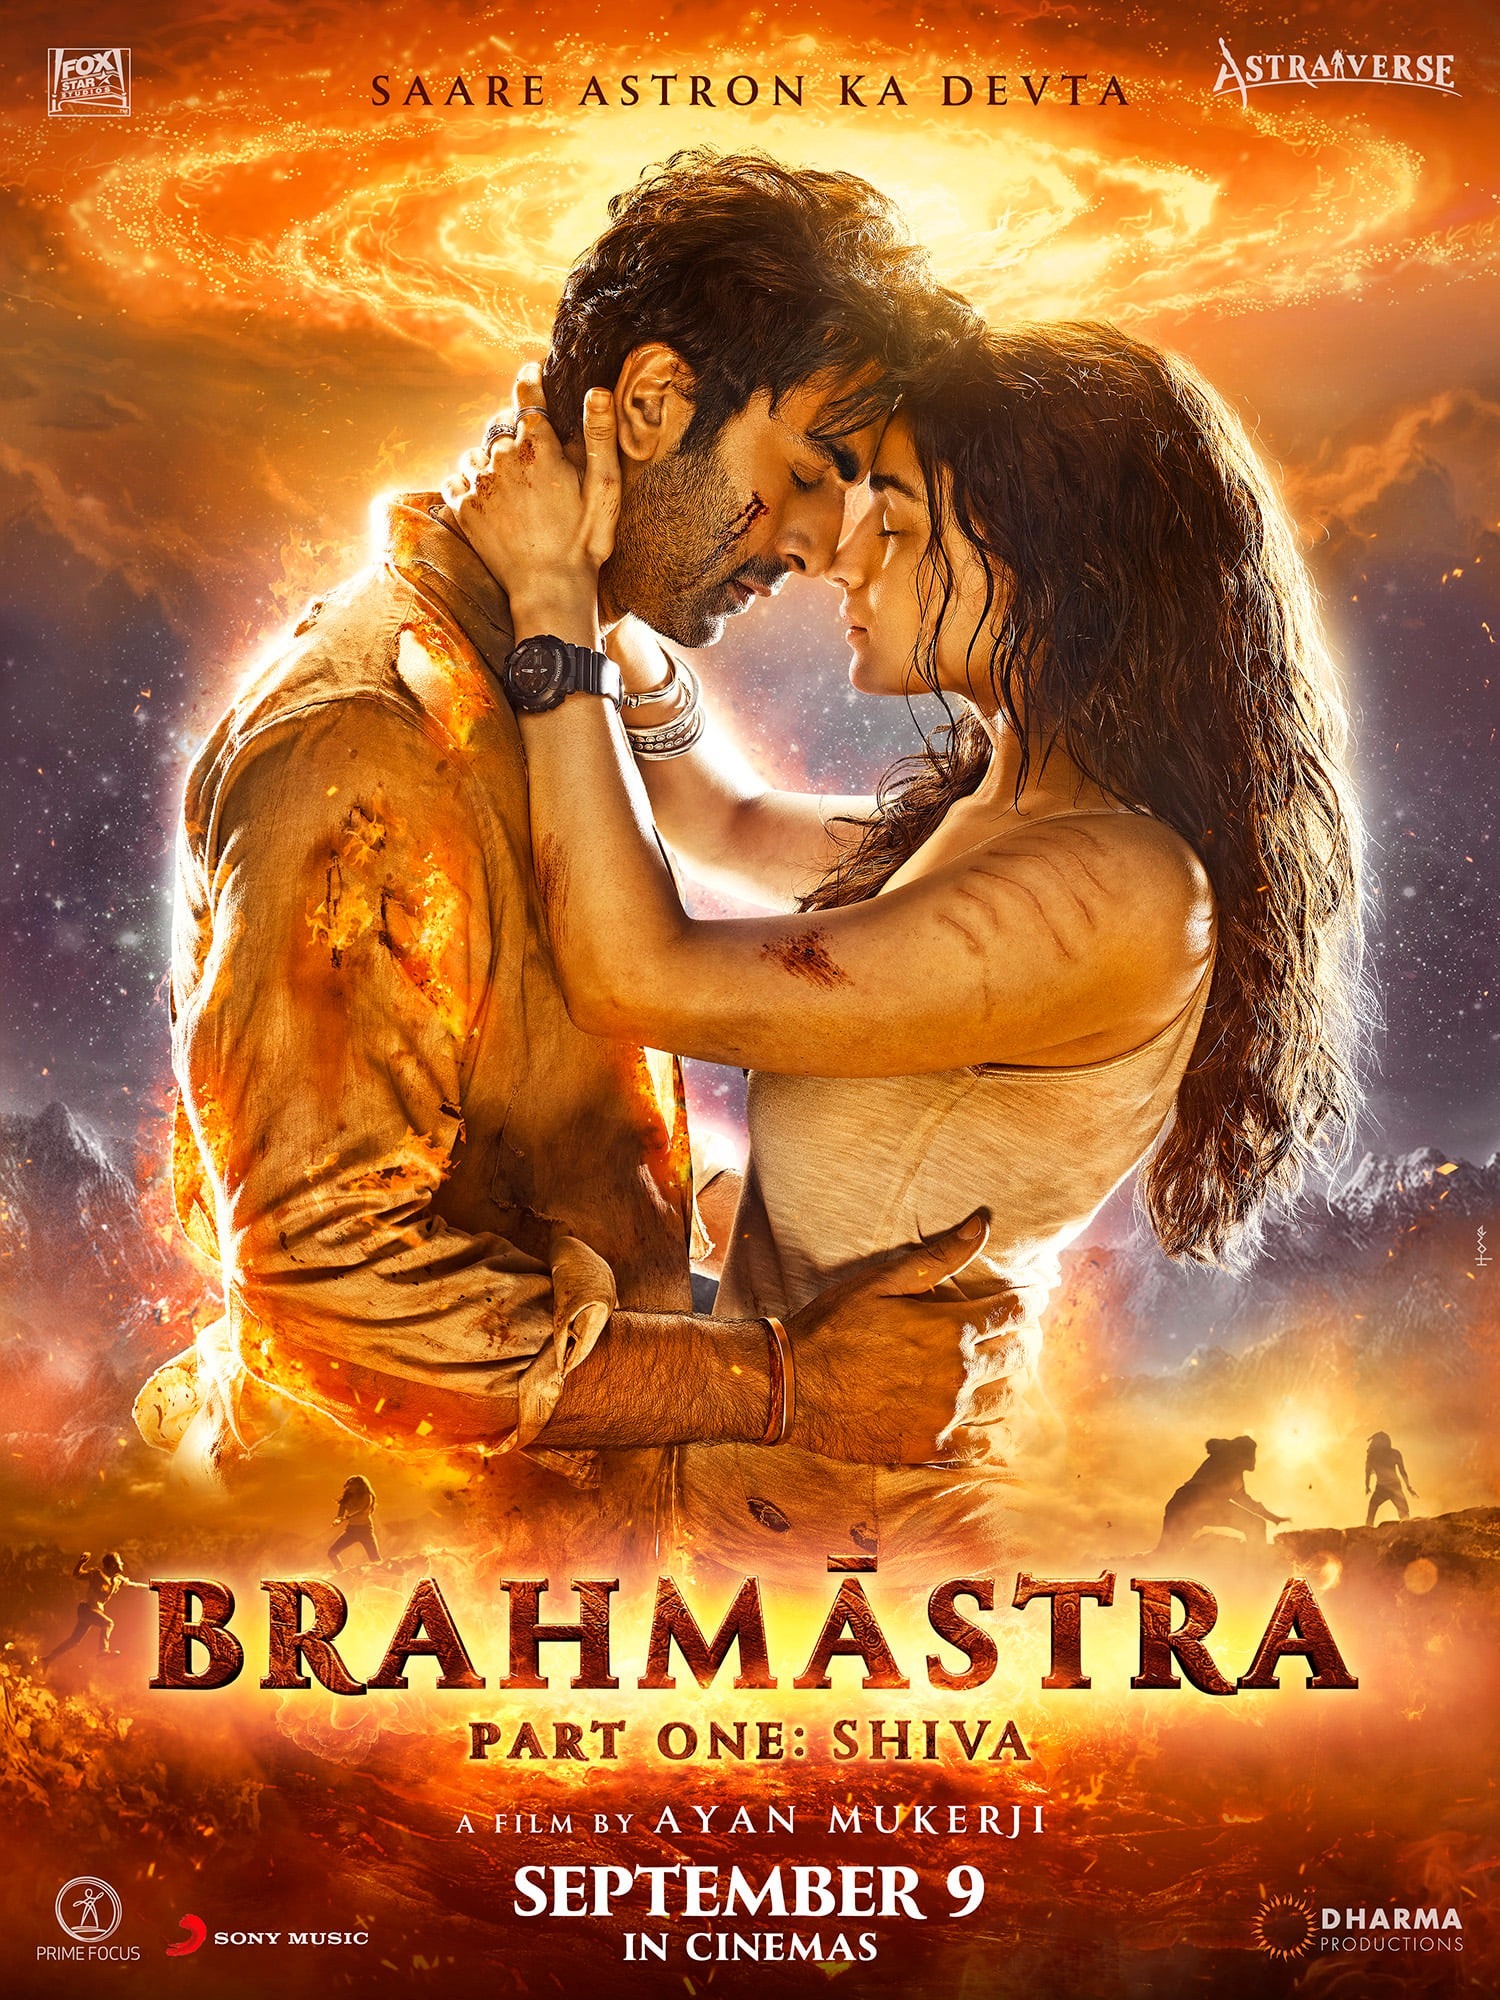 Mega Sized Movie Poster Image for Brahmastra Part One: Shiva 